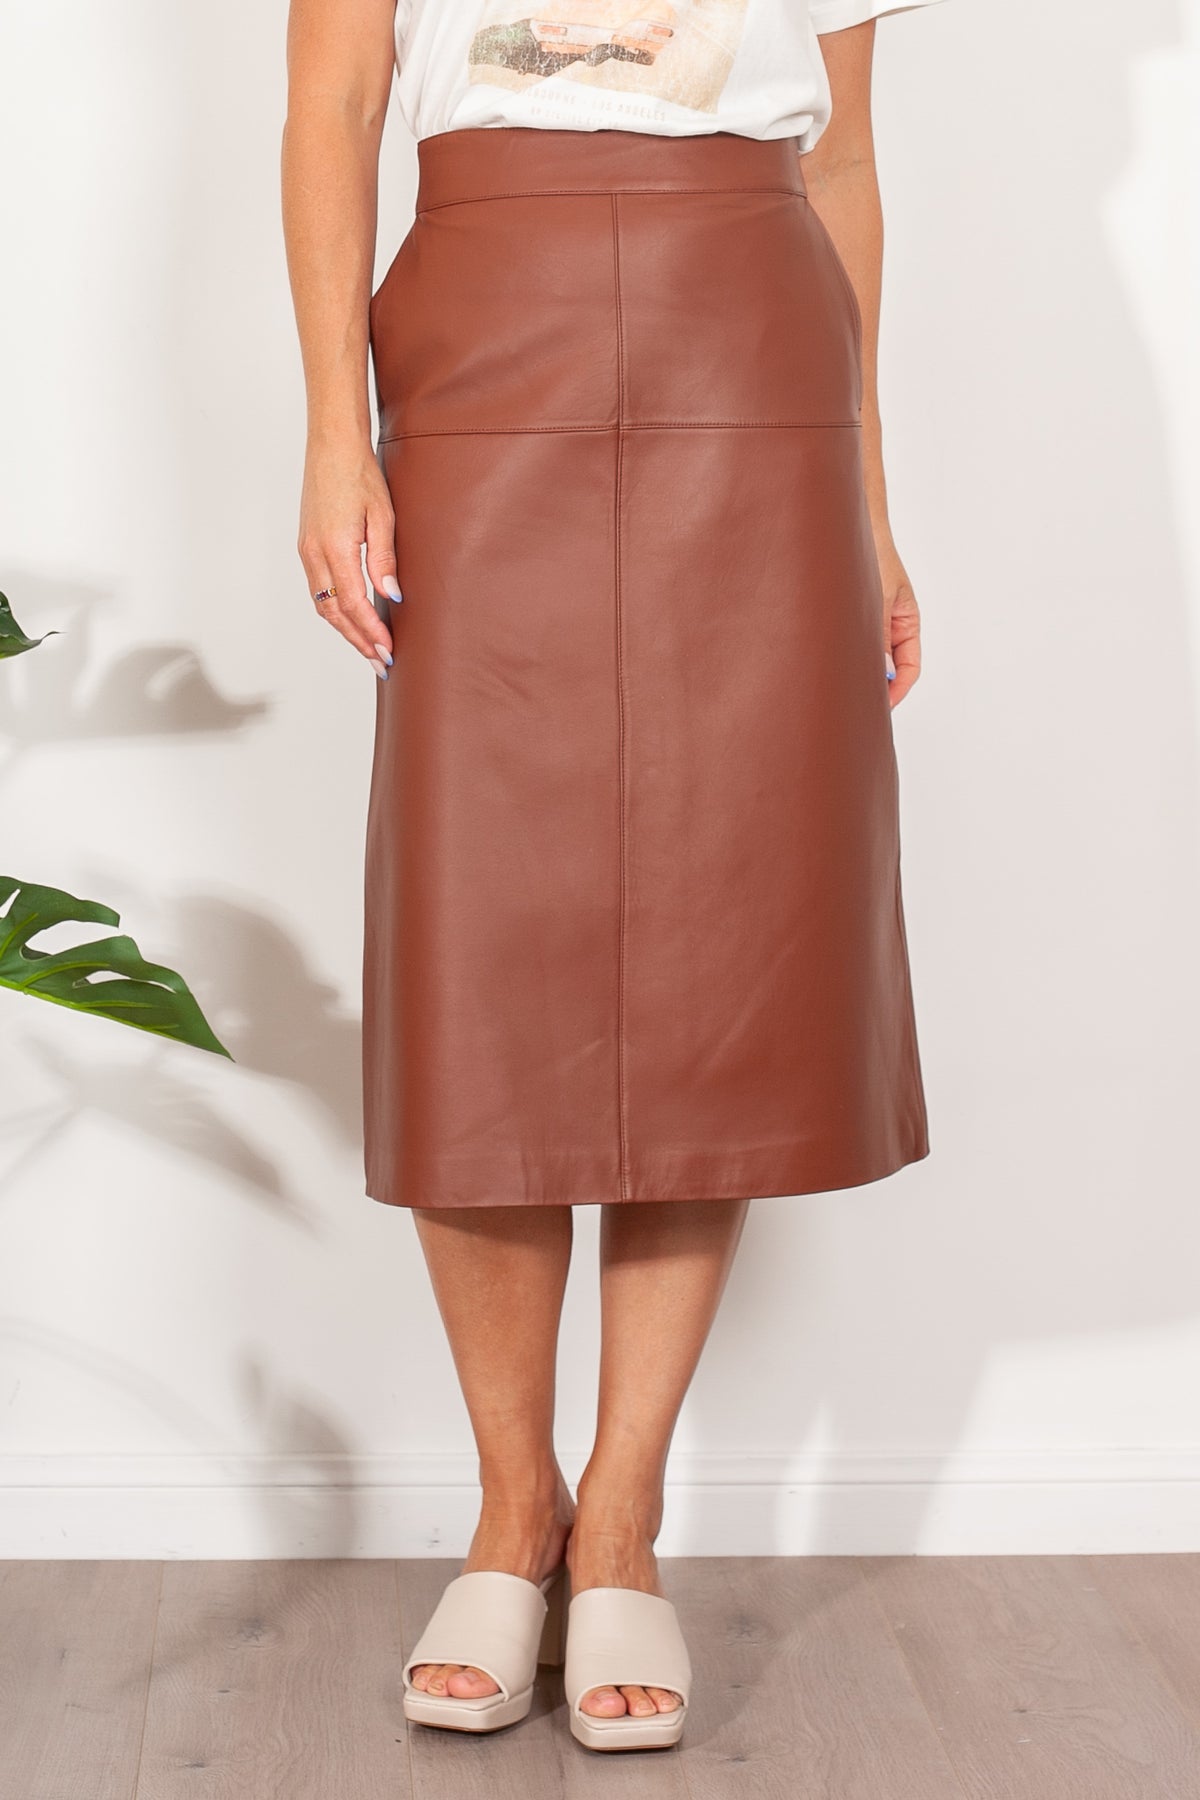 Ena Pelly Blair Leather Midi Skirt